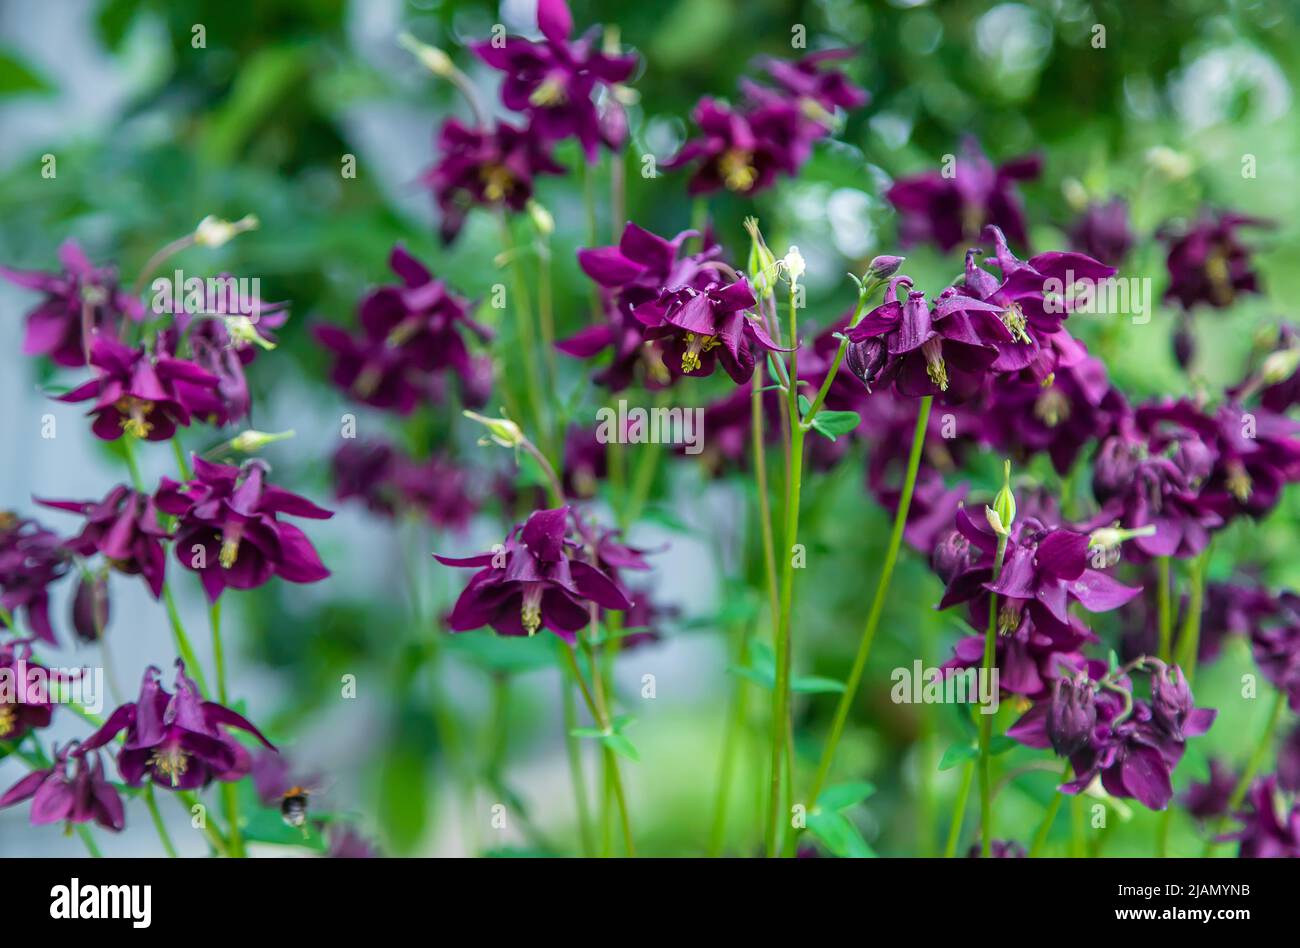 Aquilegia blooms in the garden. Selective focus. Stock Photo